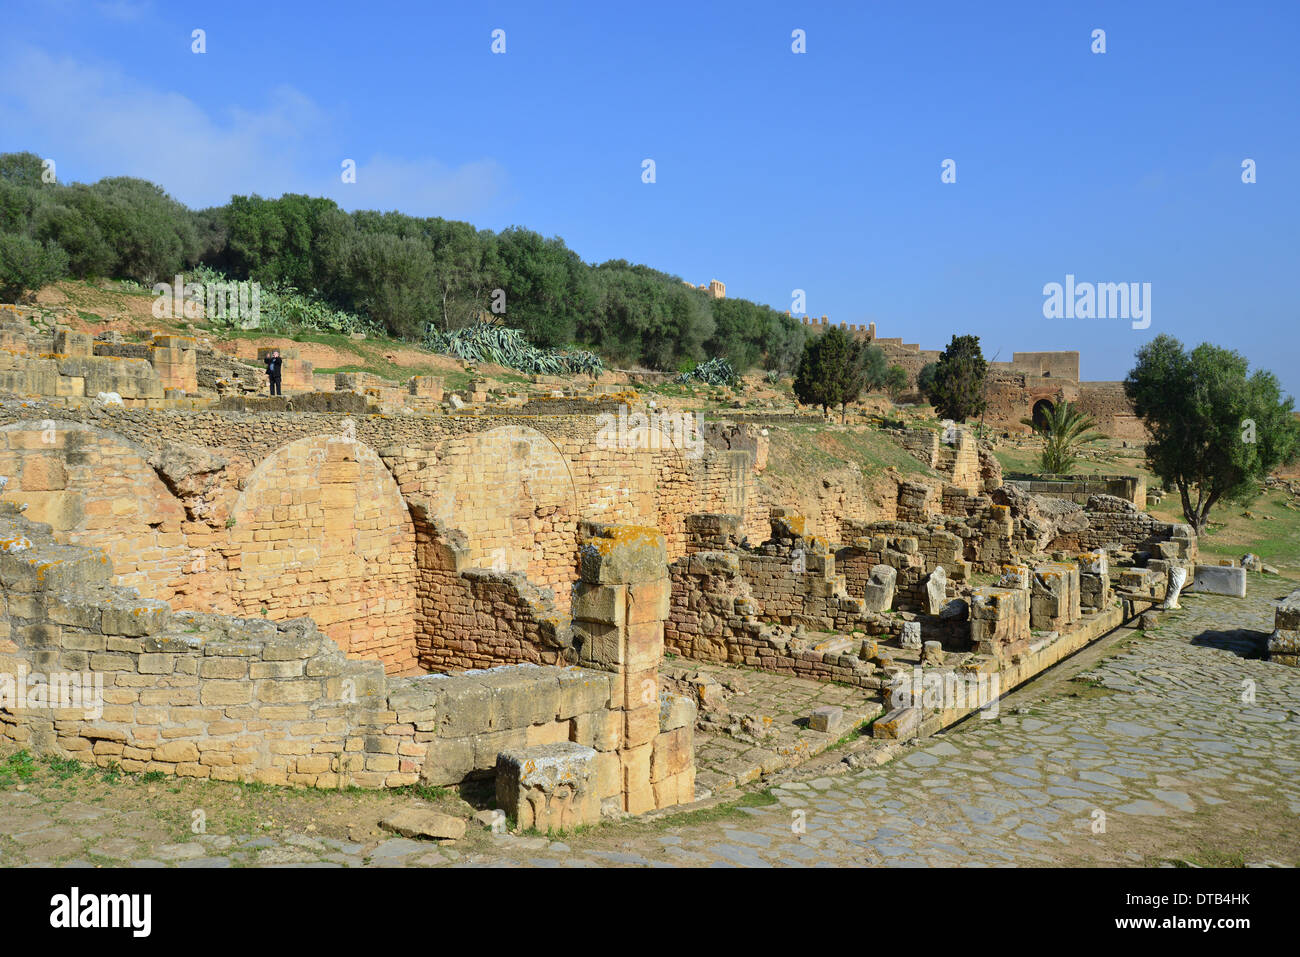 Chellah (Sala Colonia) sito archeologico romano, Rabat, Rabat-Salé-Zemmour-Zaer regione, il Regno del Marocco Foto Stock